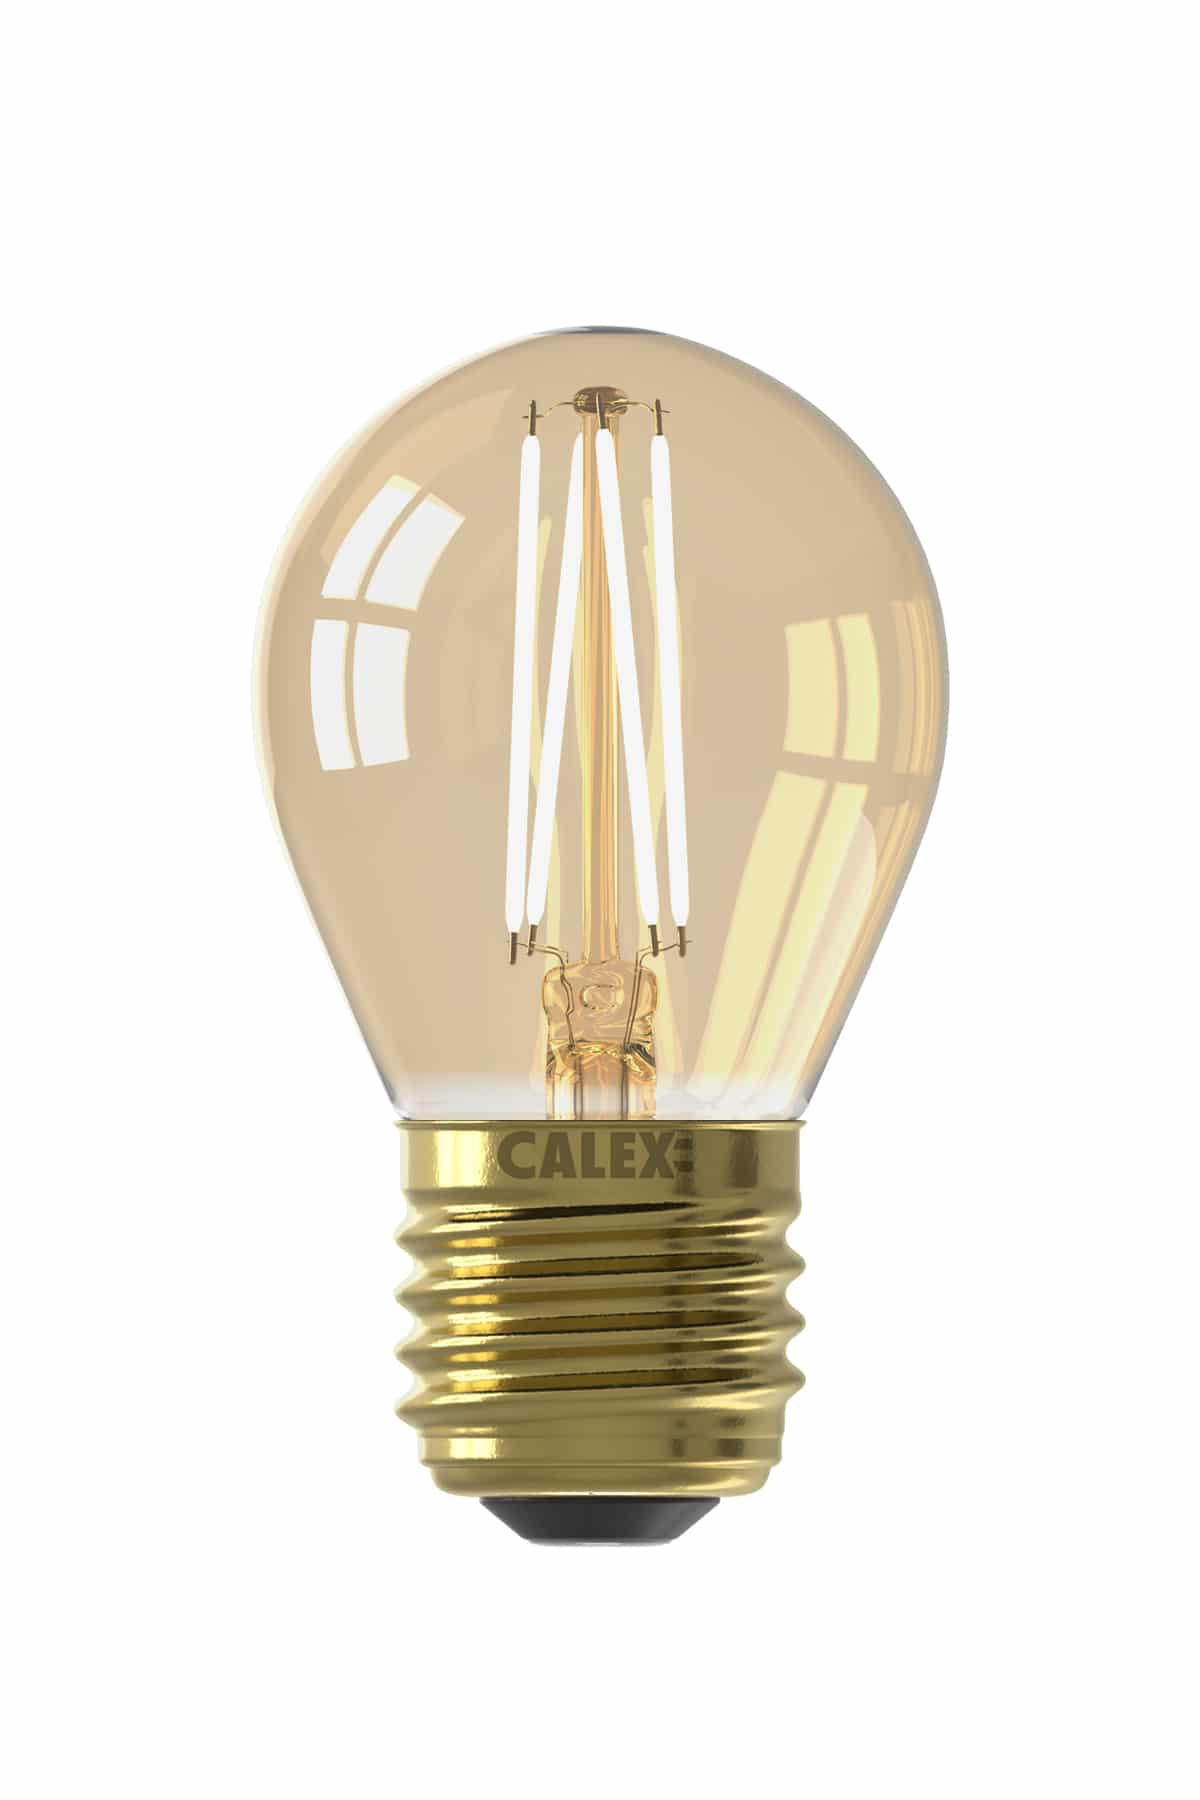 Calex Spherical Bulb Led Lamp E27 8211 250 Lumen